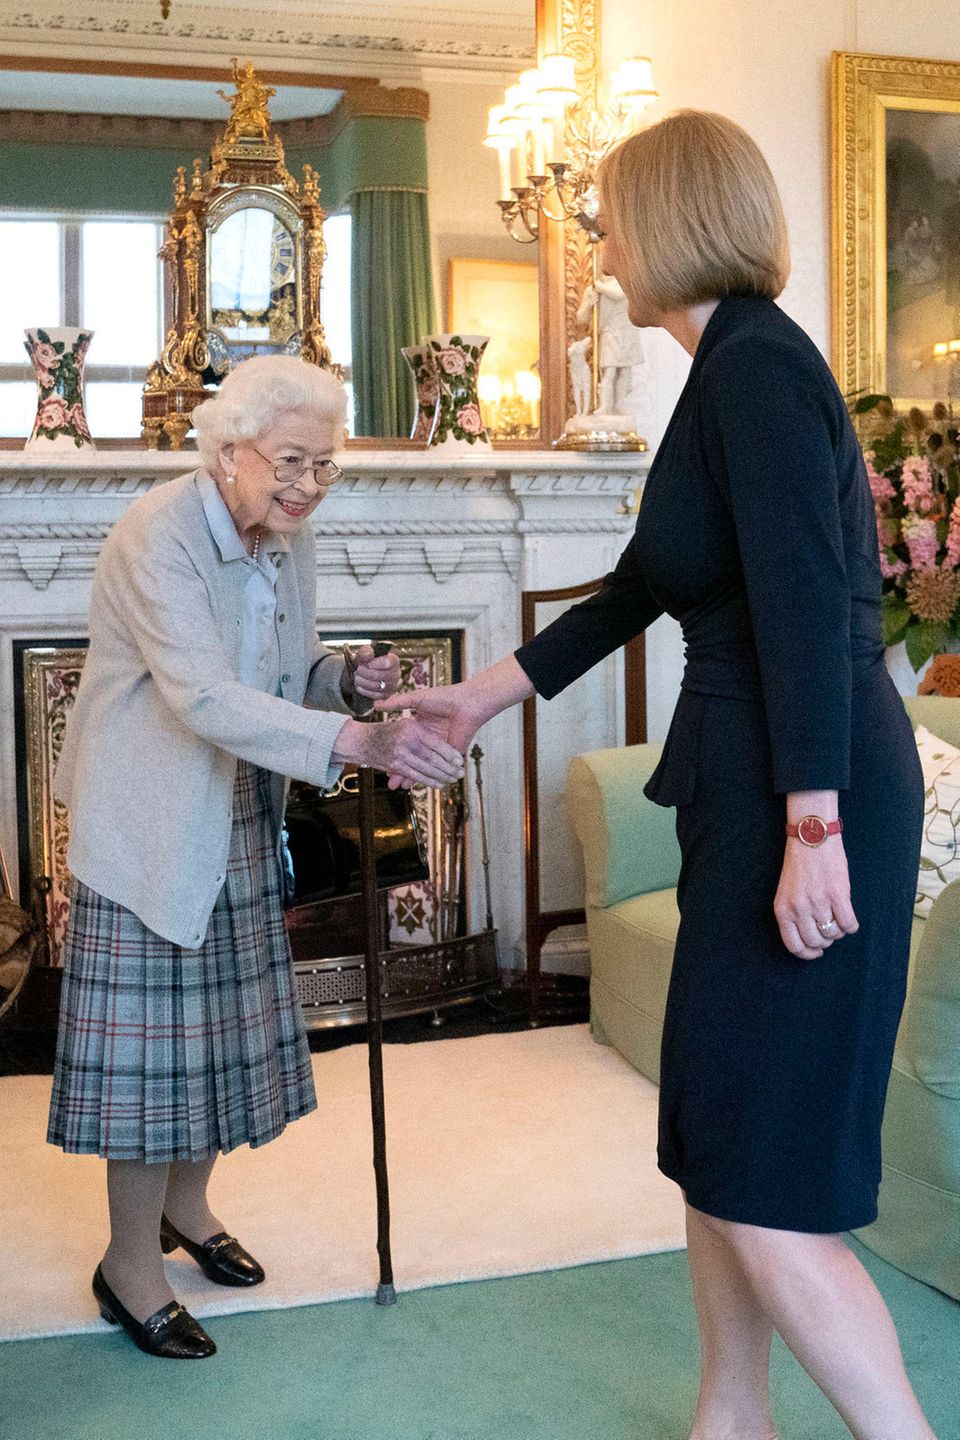 Es ist der letzte offizielle der Termin von Queen Elizabeth: Am 6. September 2022 ernennt sie Liz Truss als Nachfolgerin von Premierminister Boris Johnson. Im Tartan, grauer Strickjacke und Gehstock empfängt sie die Politikerin. Trotz körperlicher Anstrengung zeigen Bilder die Königin mit einem breiten Lächeln im Gesicht. 